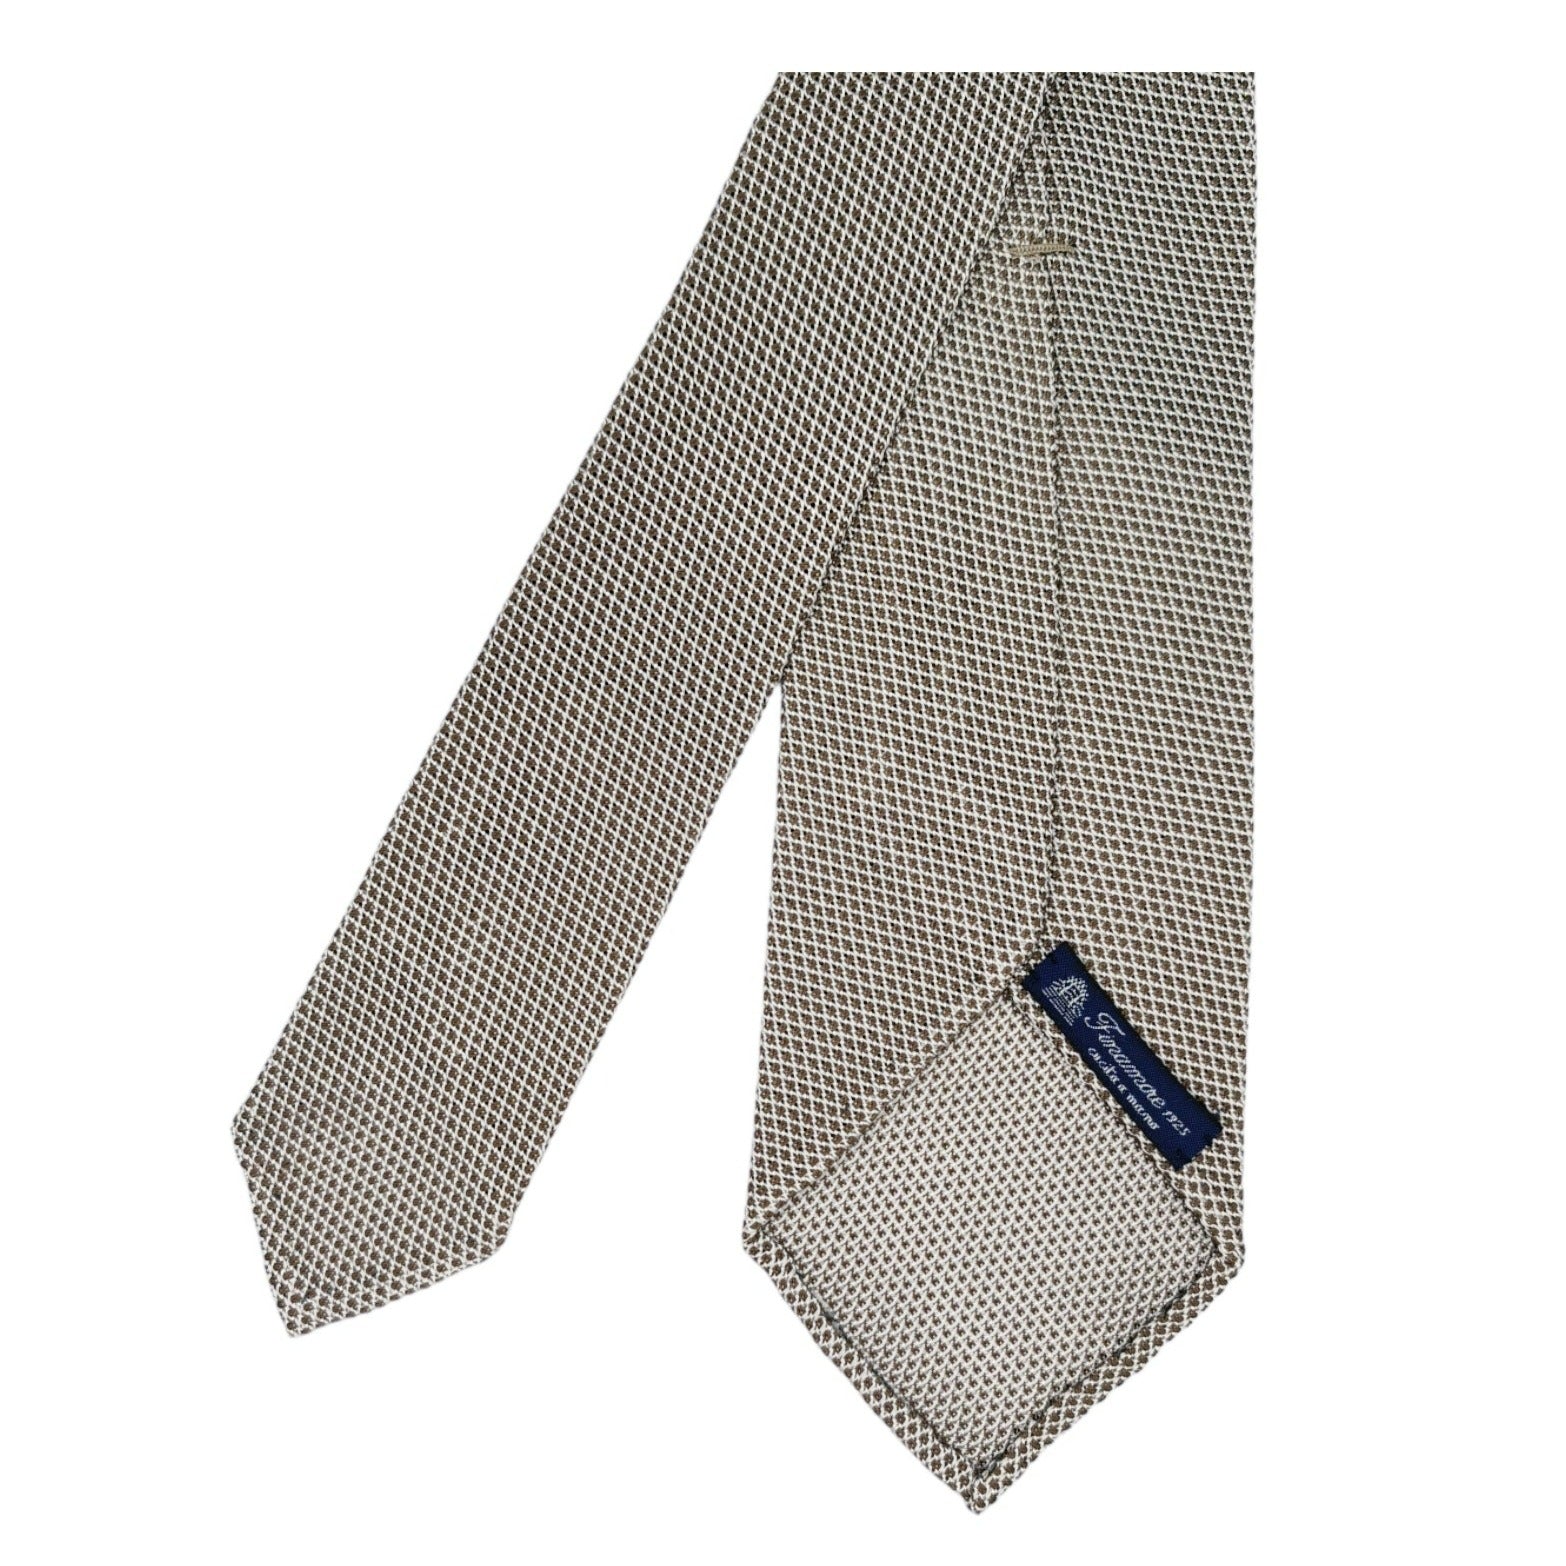 Finamore 1925 Anversa tie in gauzed silk micro brown details